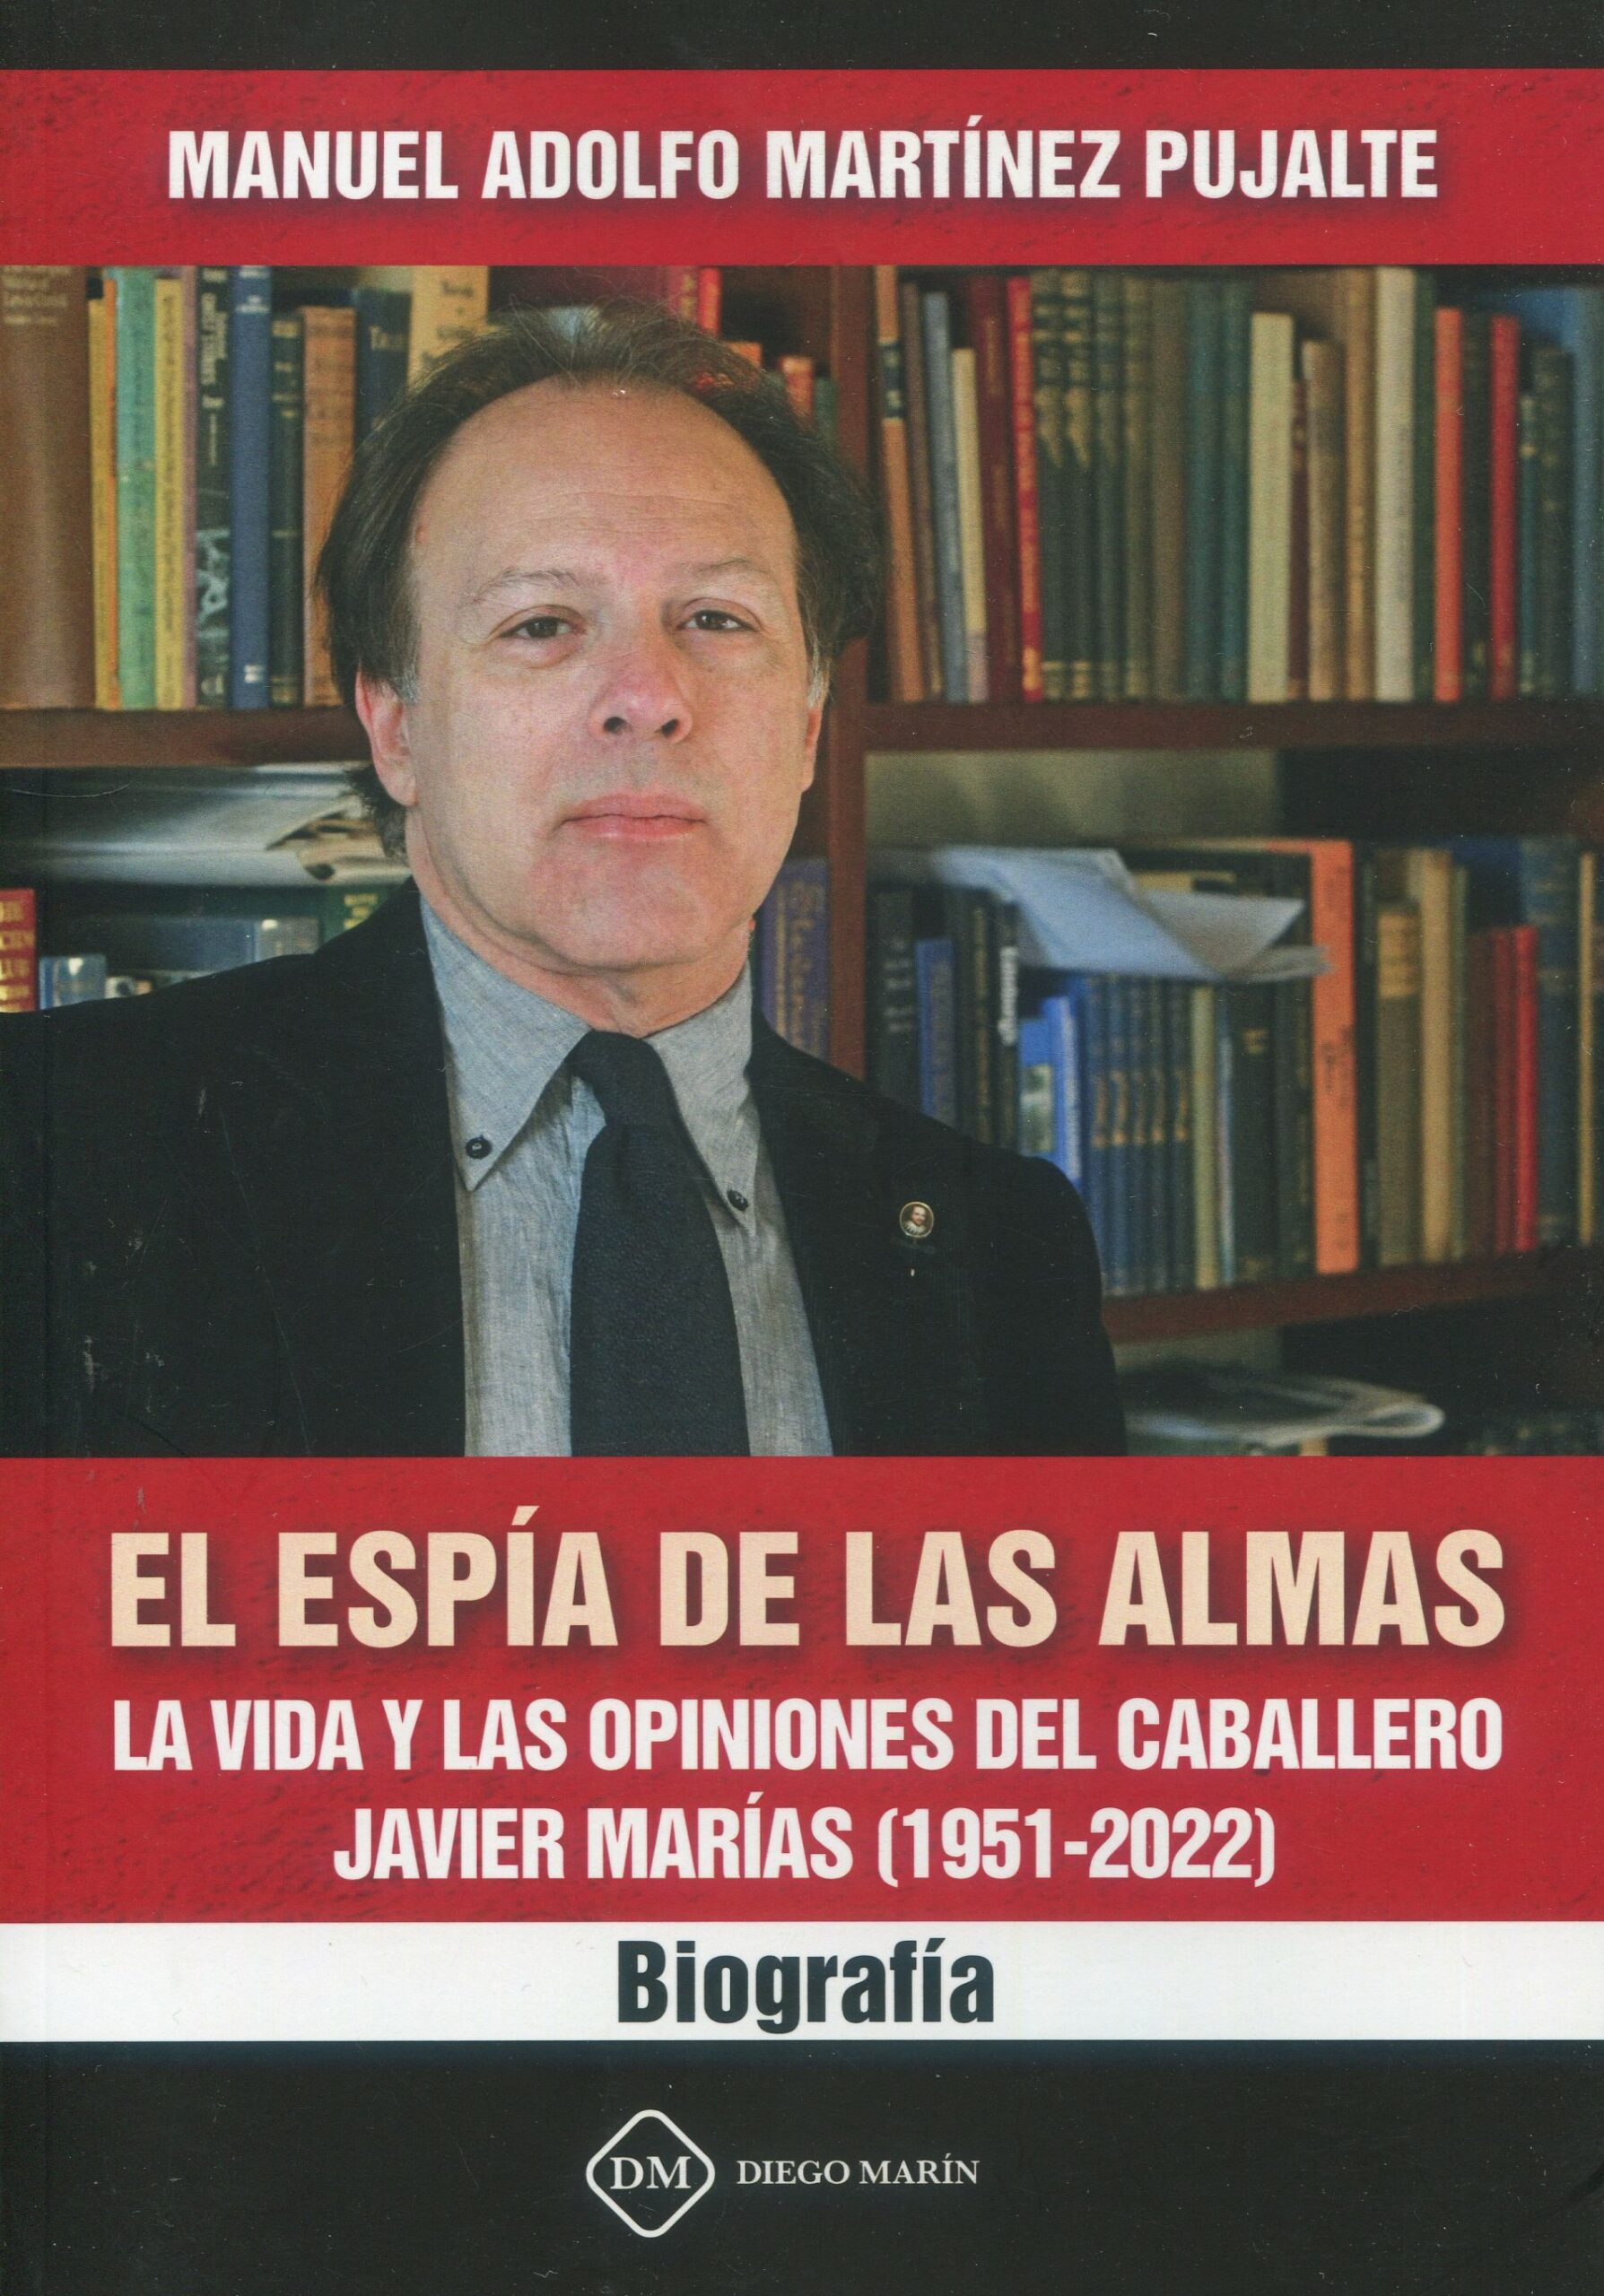 El espía de las almas. La vida y las opiniones del caballero Javier Marías (1951-2022). Biografía